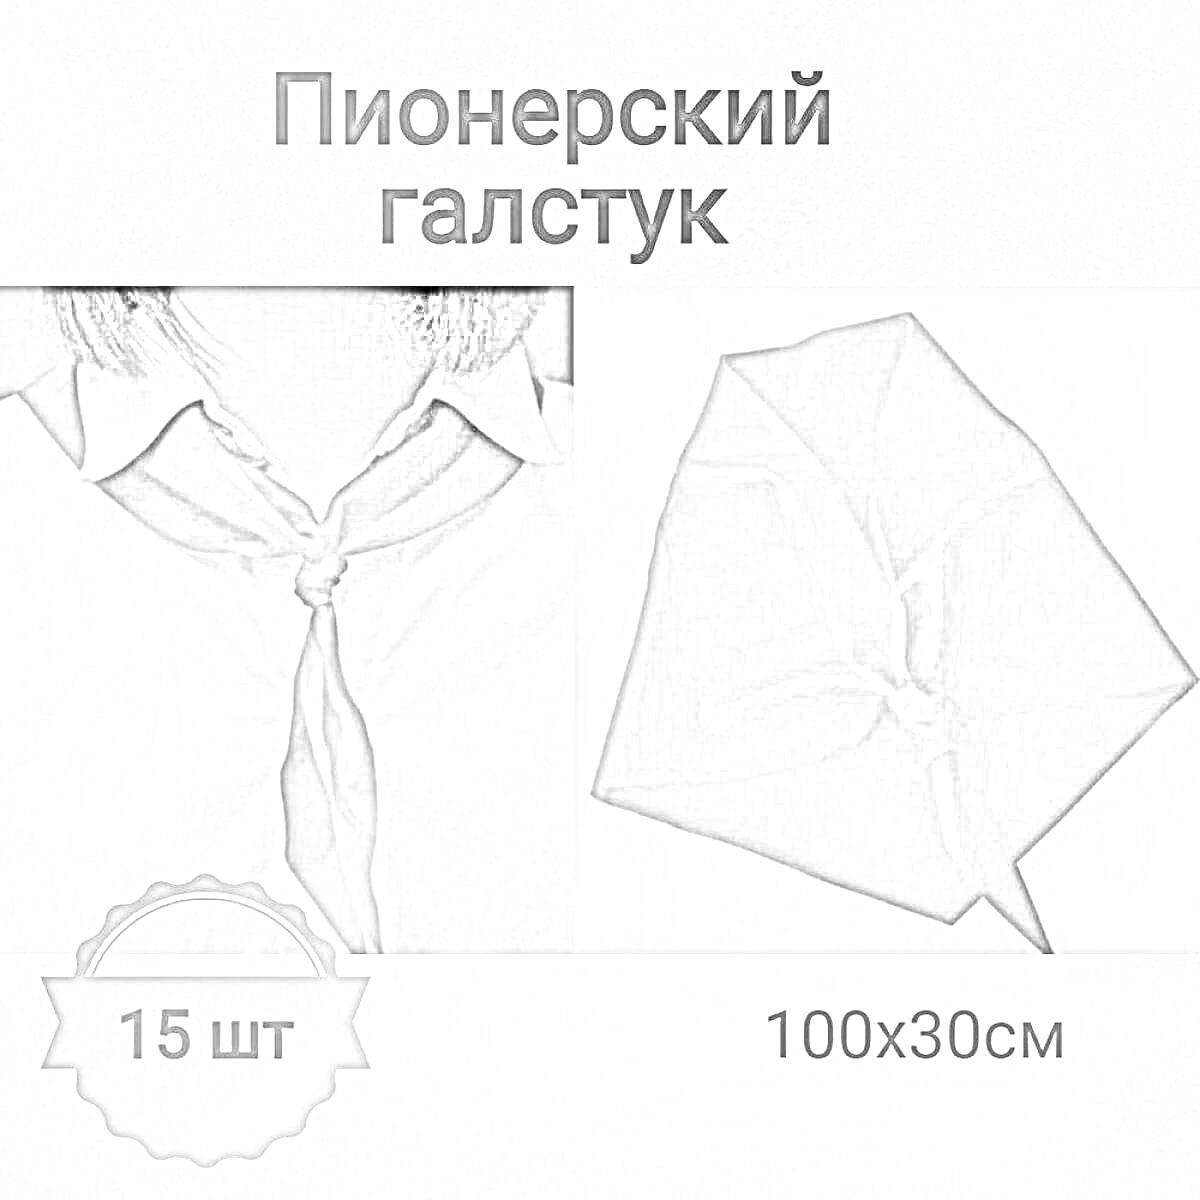 Раскраска Пионерский галстук, 15 шт, 100x30 см